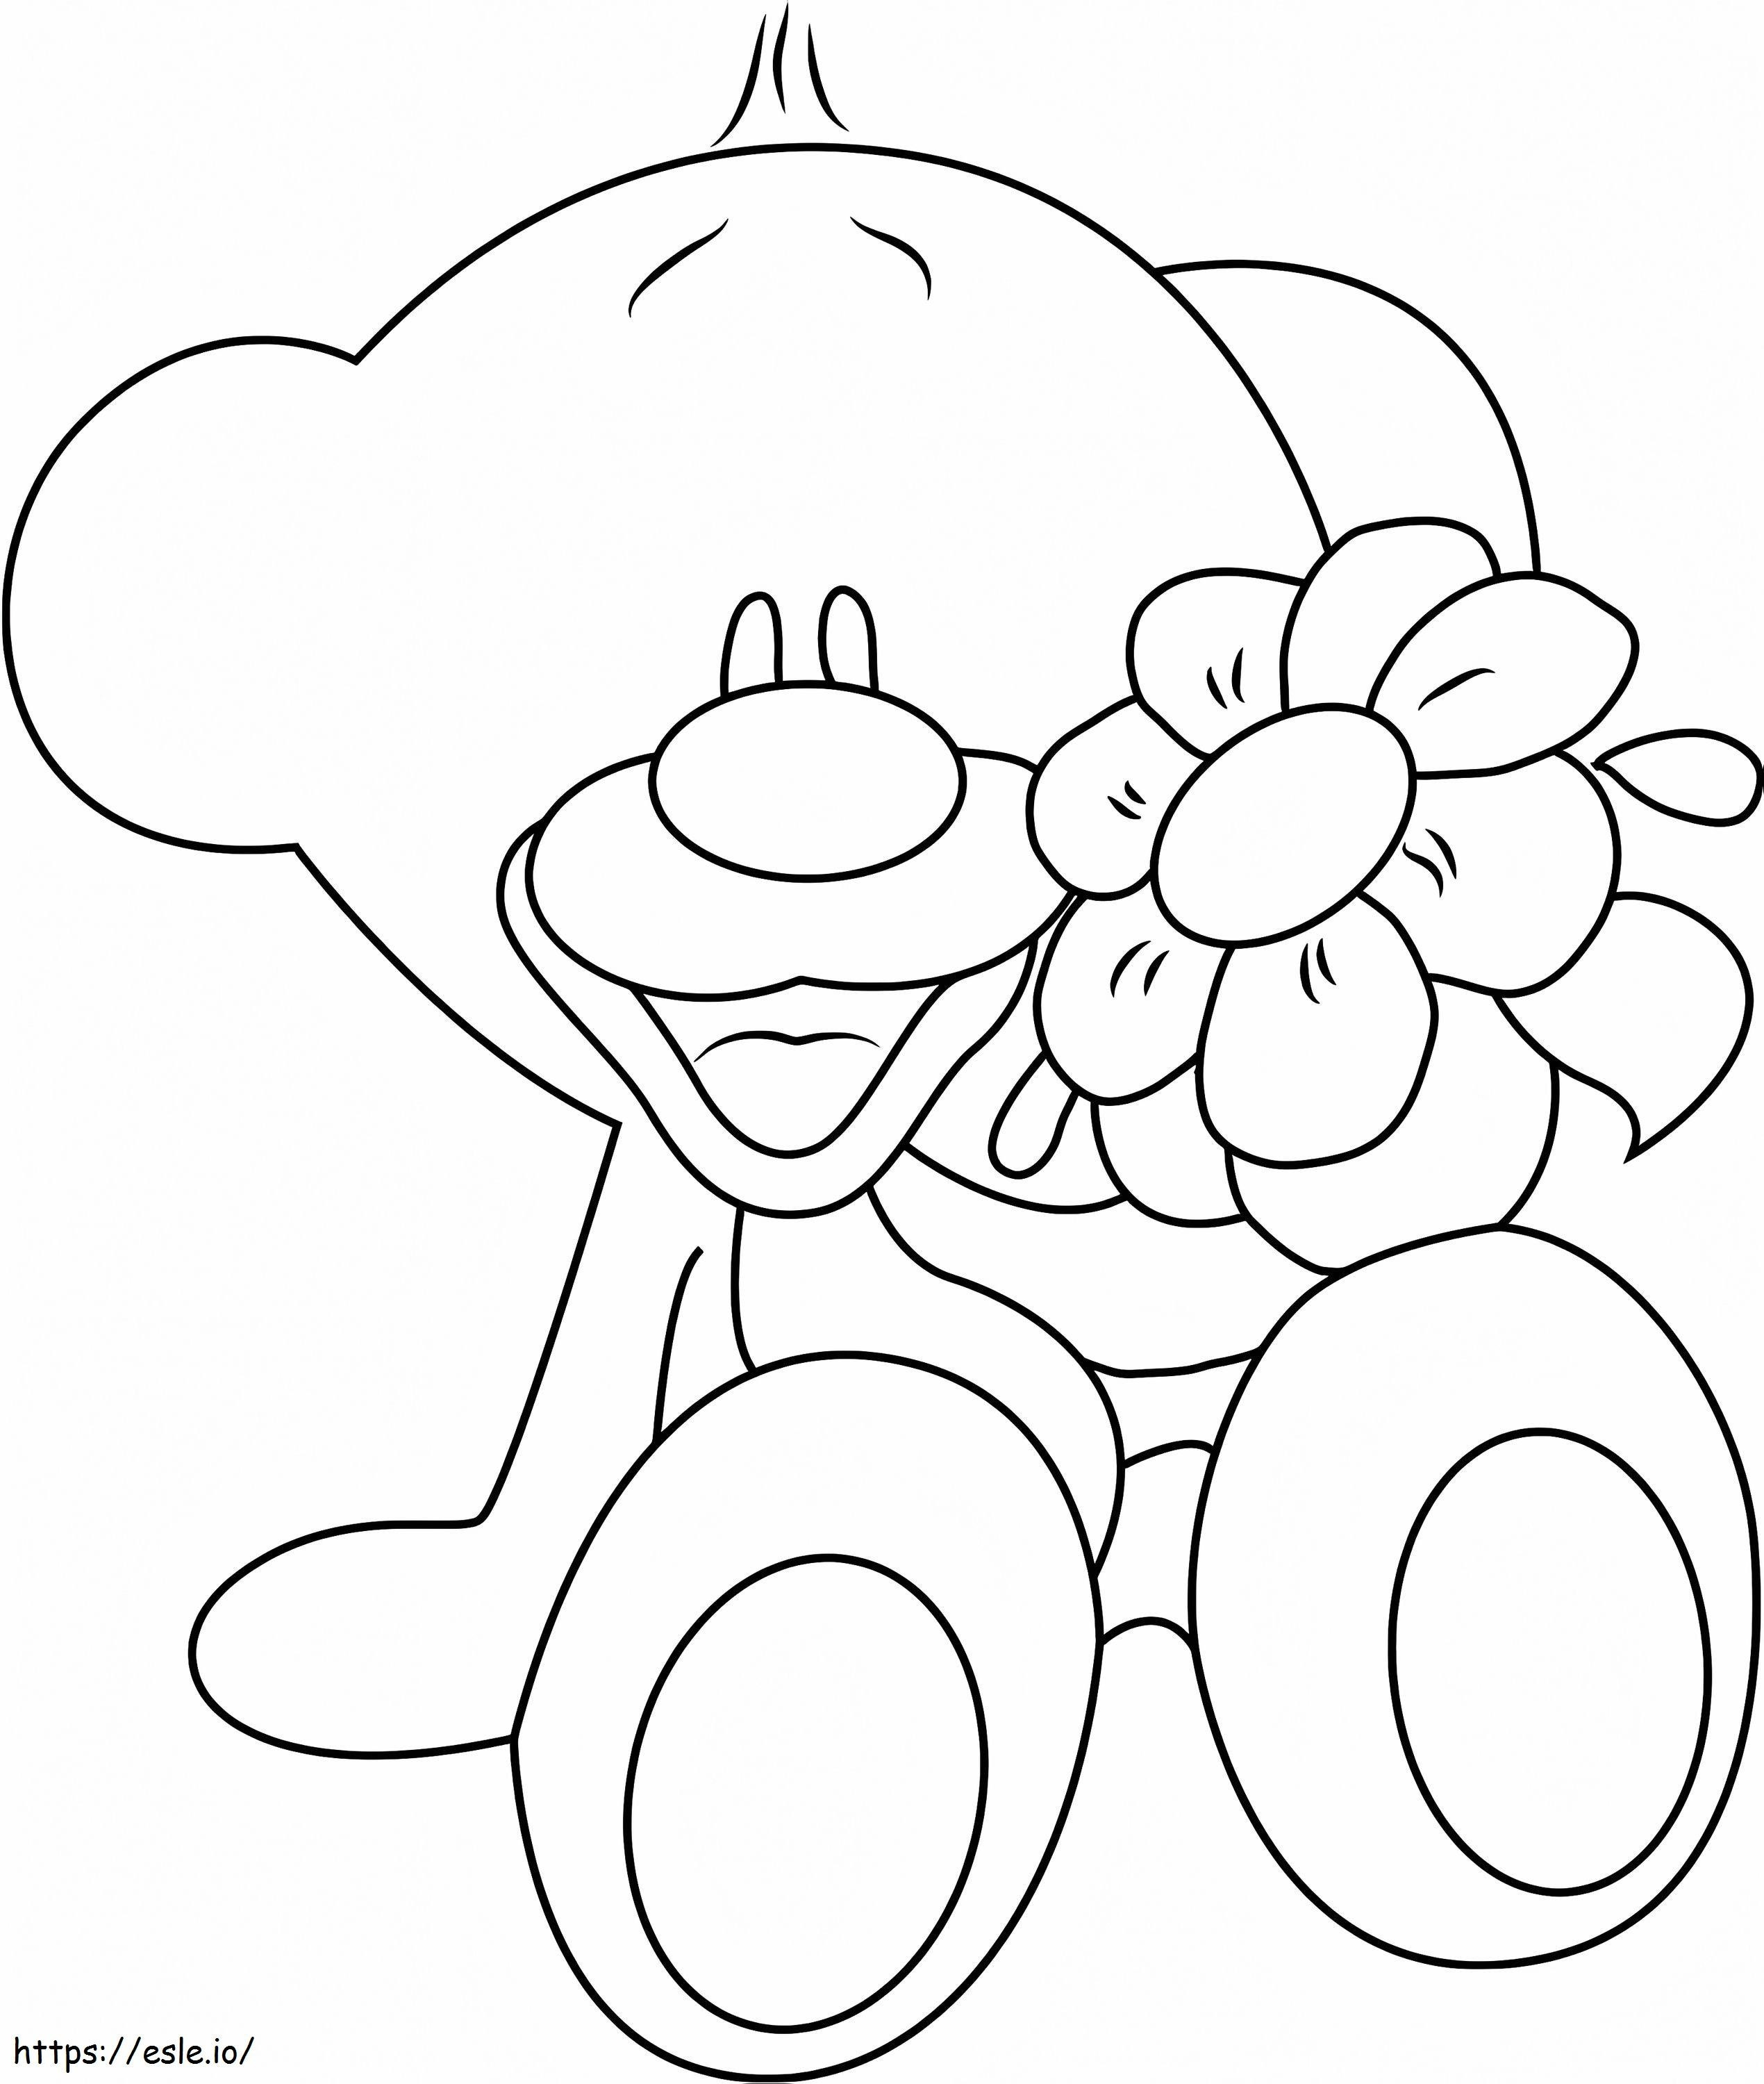 Coloriage Pimboli et fleur à imprimer dessin